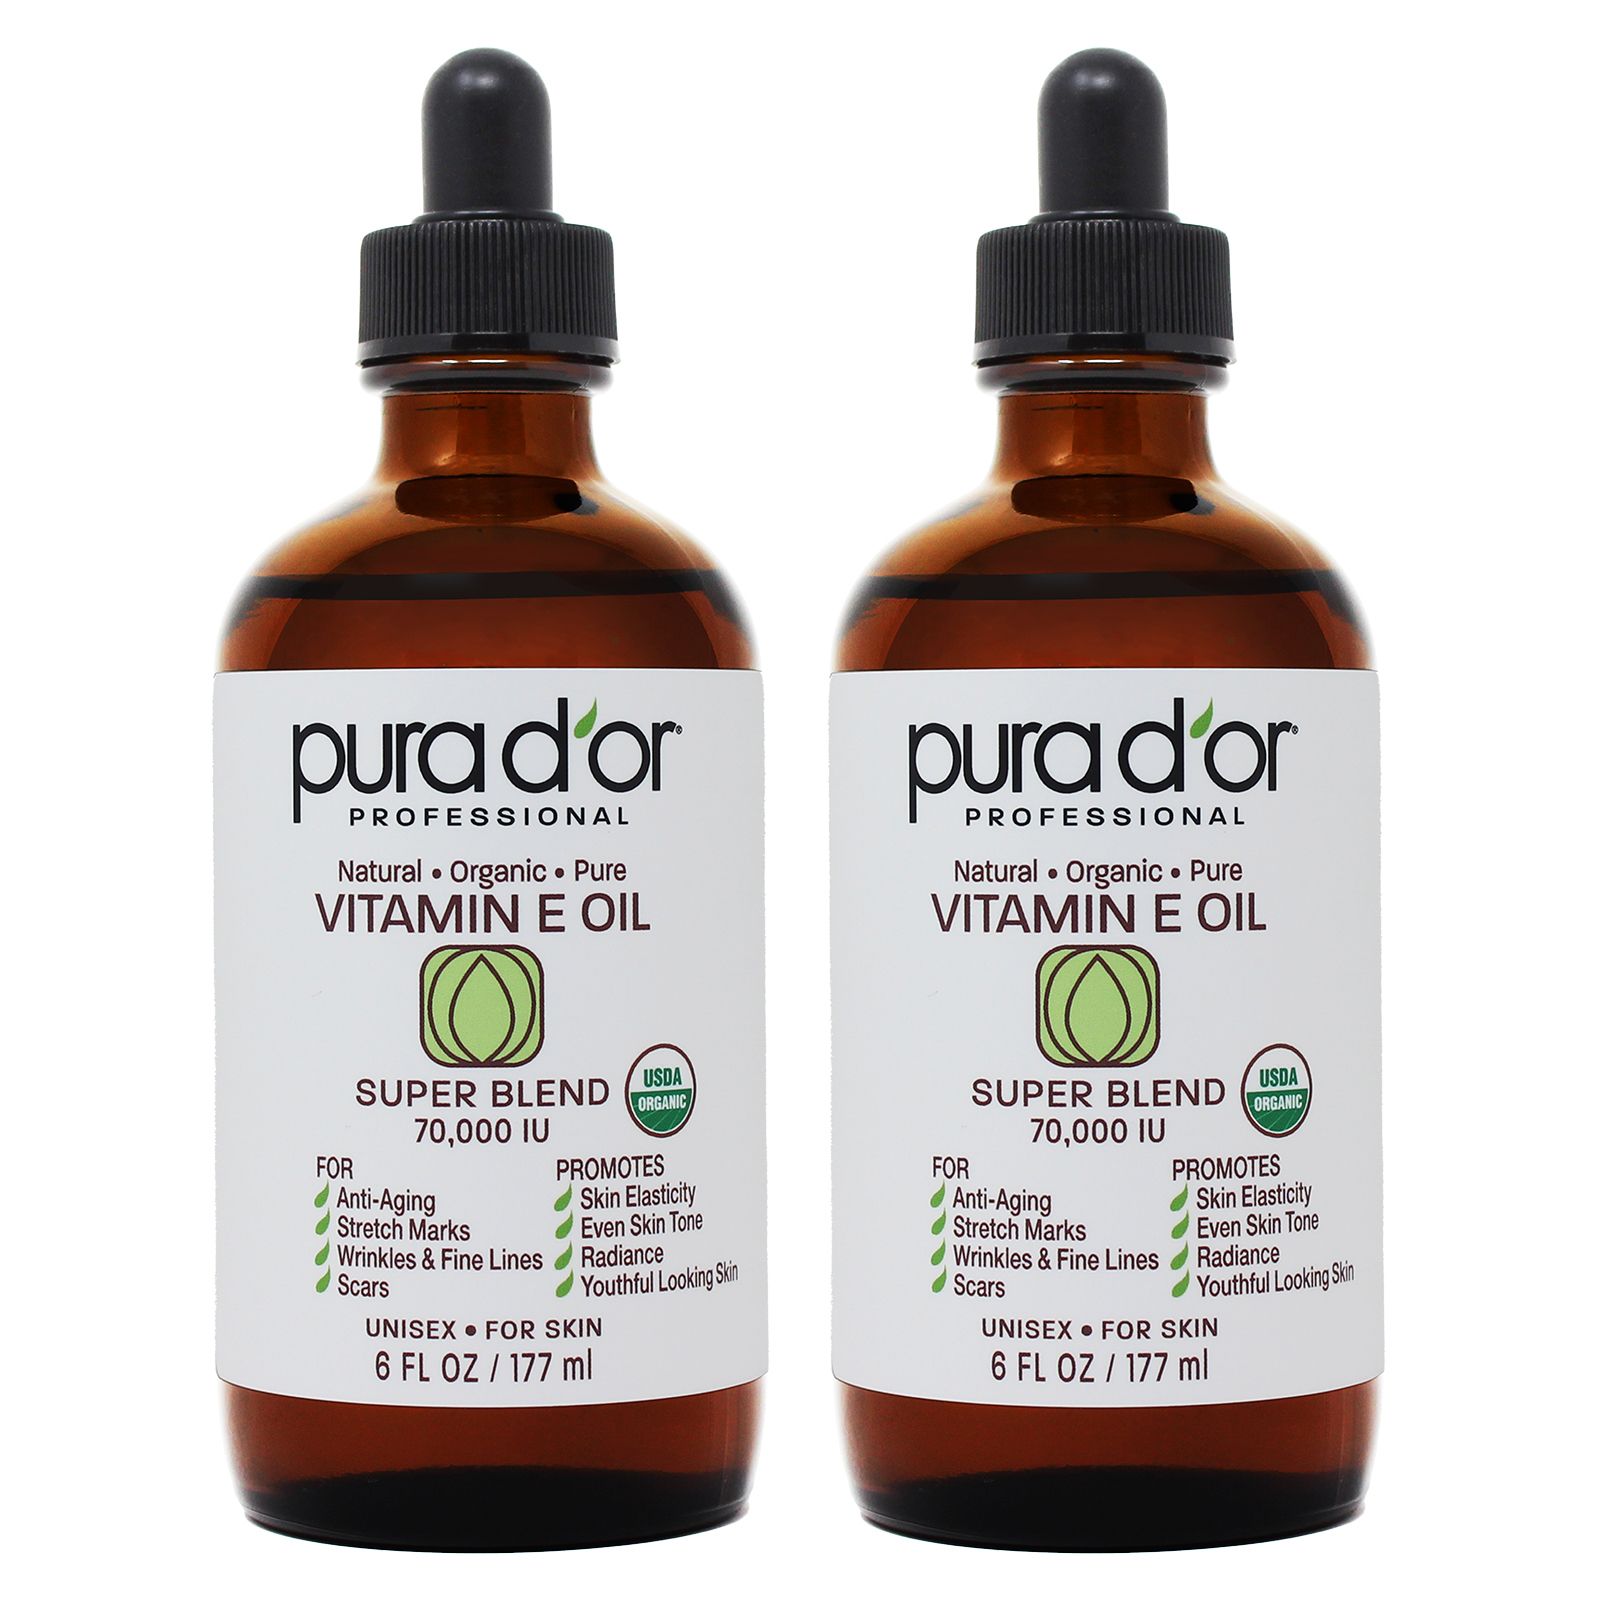 PURA D'OR Professional Vitamin E Oil Super Blend 70,000 IU Certified Organic, 12 oz.